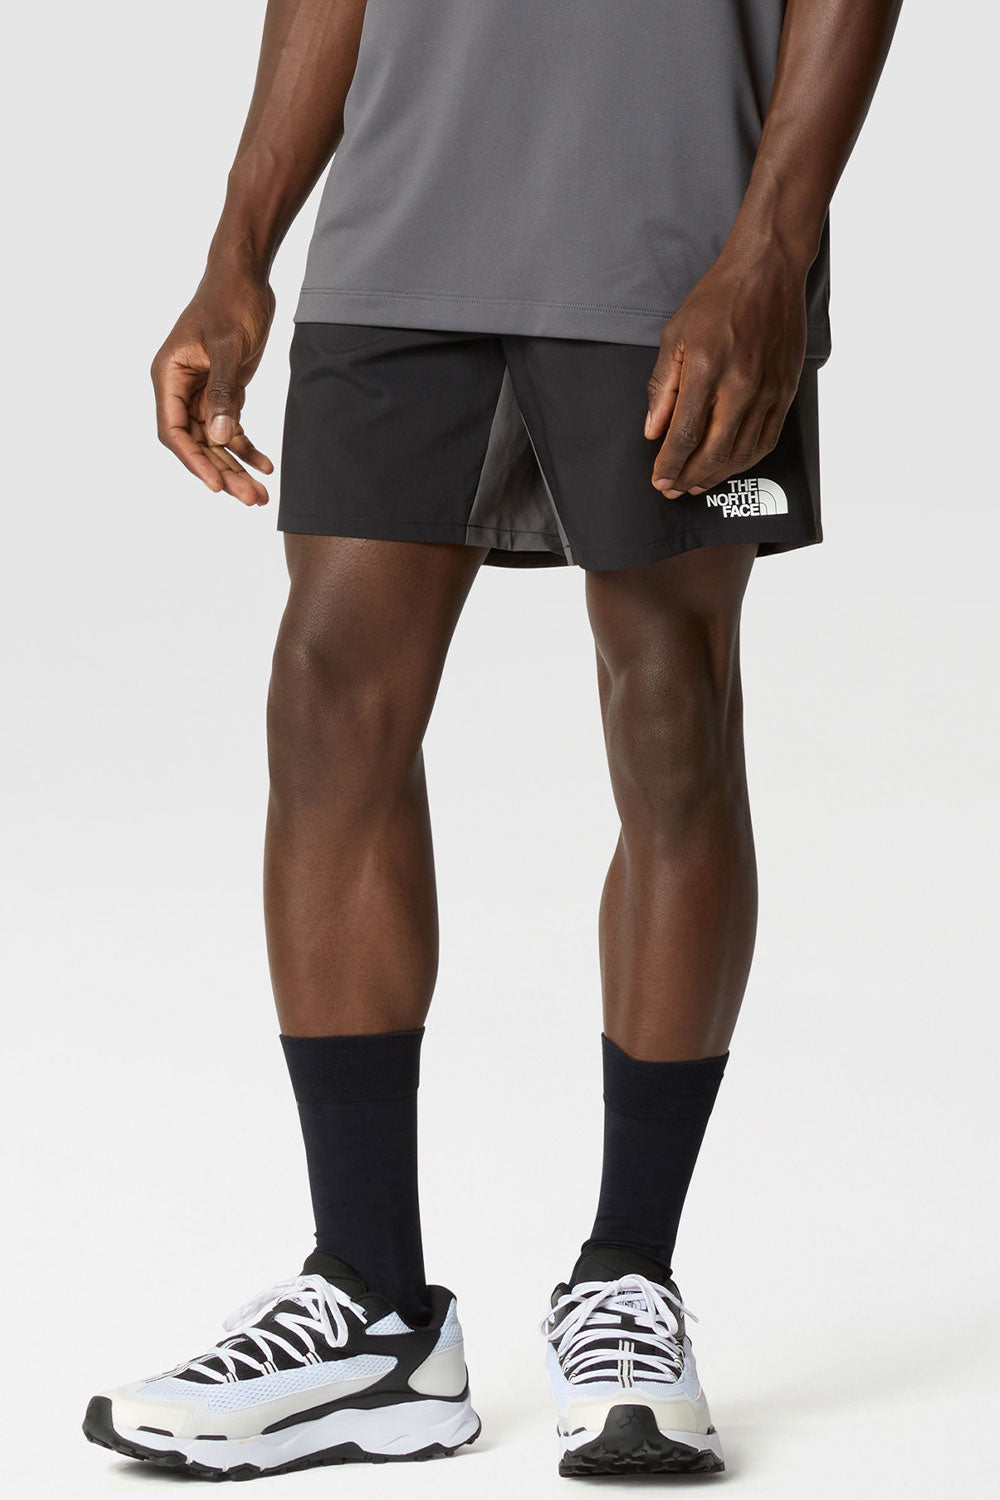 דה נורת׳ פייס מכנסי ספורט MA בצבע שחור אפור לגברים-The North Face-XS-נאקו